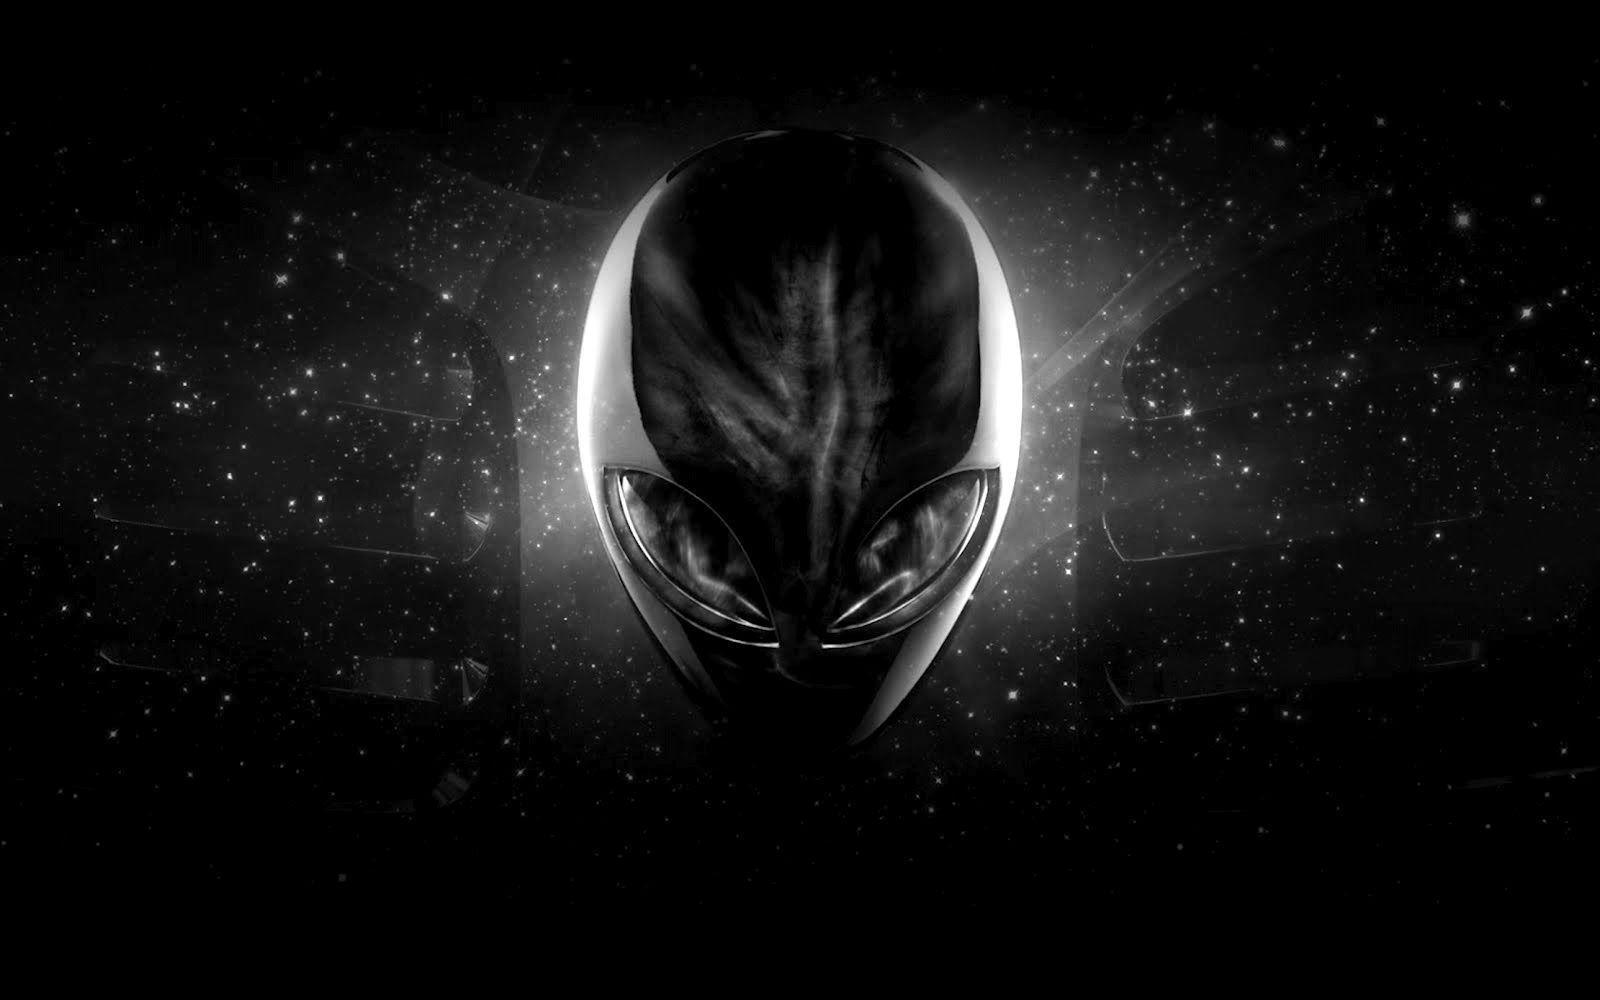 alienware aurora star wars edition desktop background